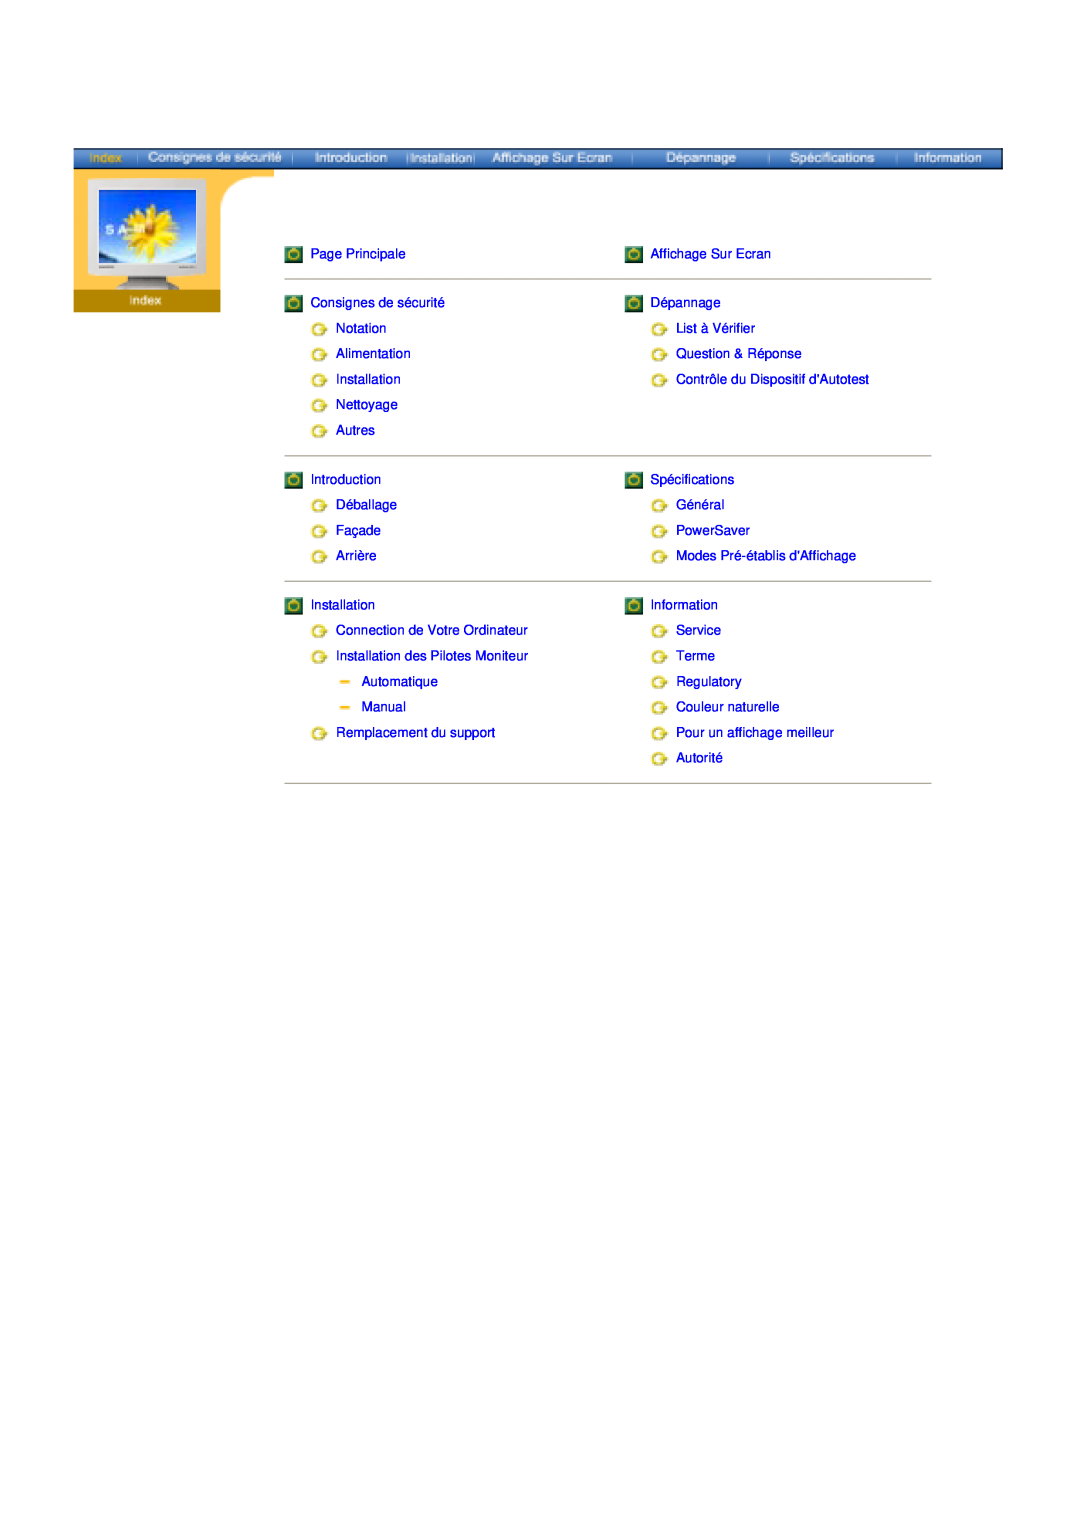 Samsung NB17BSHSD/EDC Page Principale, Affichage Sur Ecran, Consignes de sécurité, Dépannage, Notation, List à Vérifier 